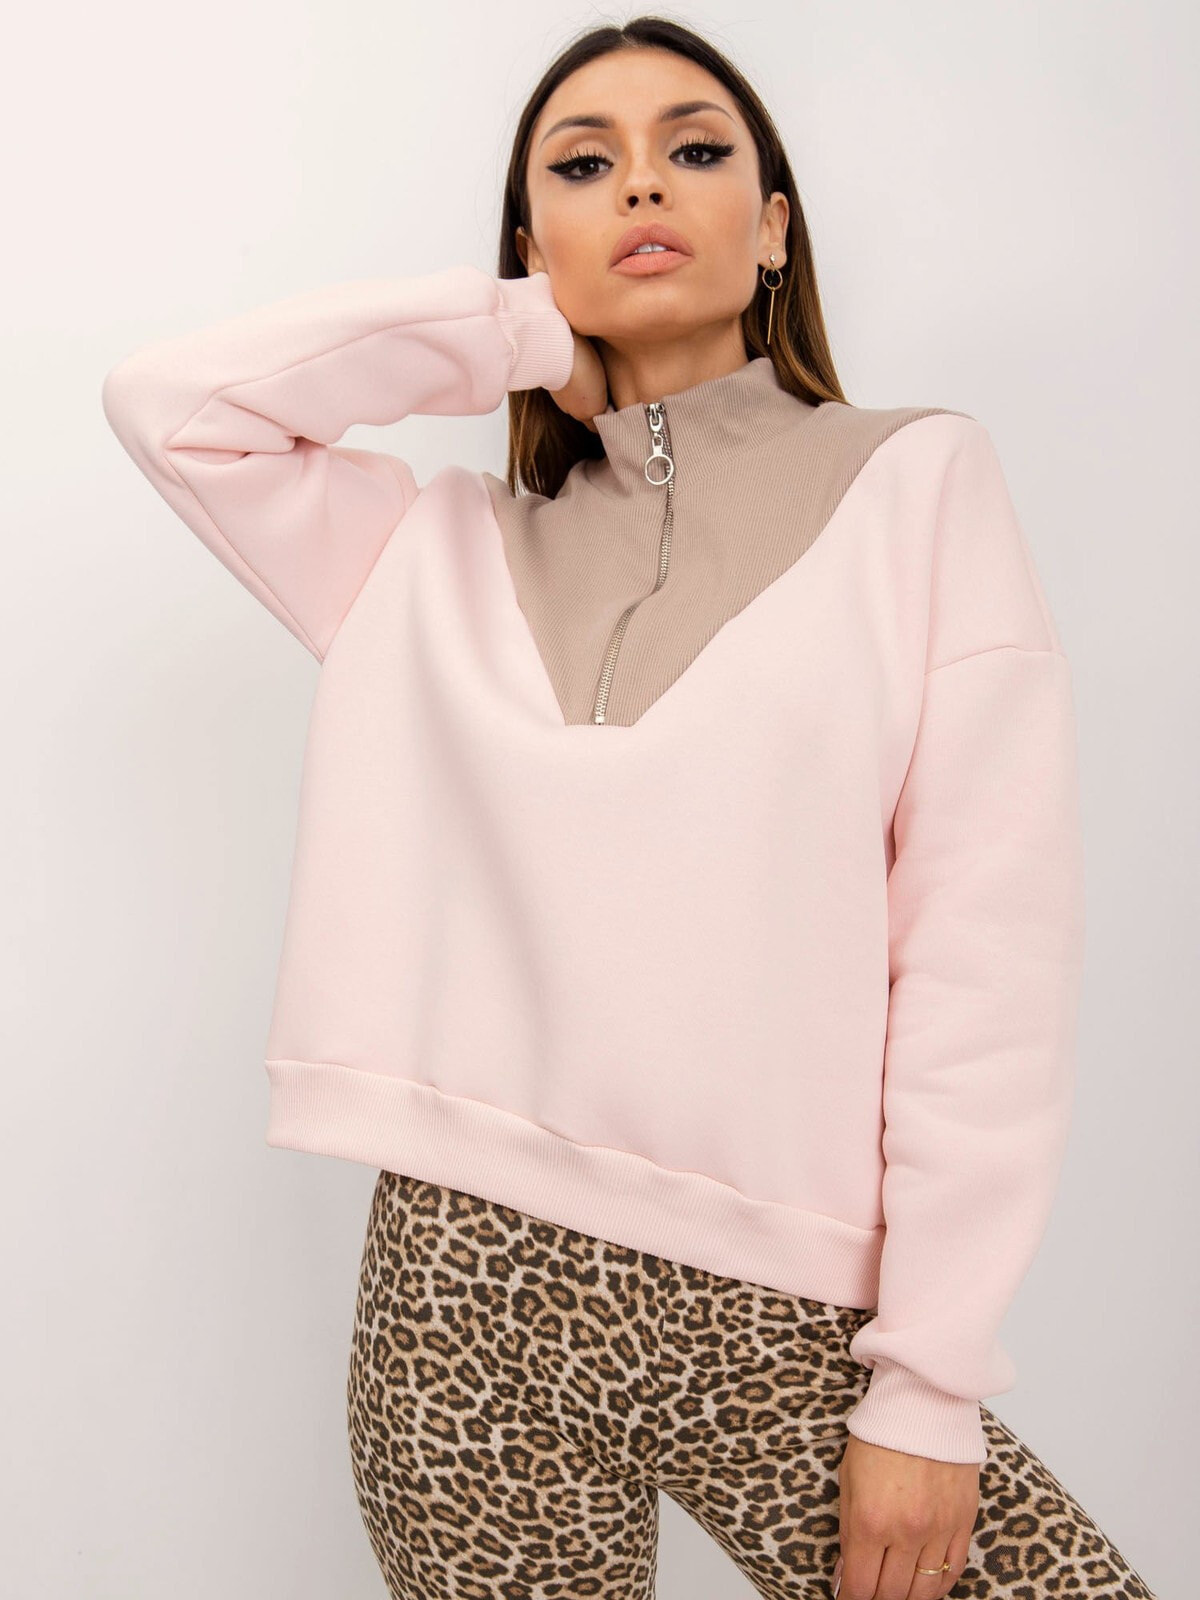 Женская блузка с длинным рукавом и высоким воротником на молнии - светло-розовая Factory Price